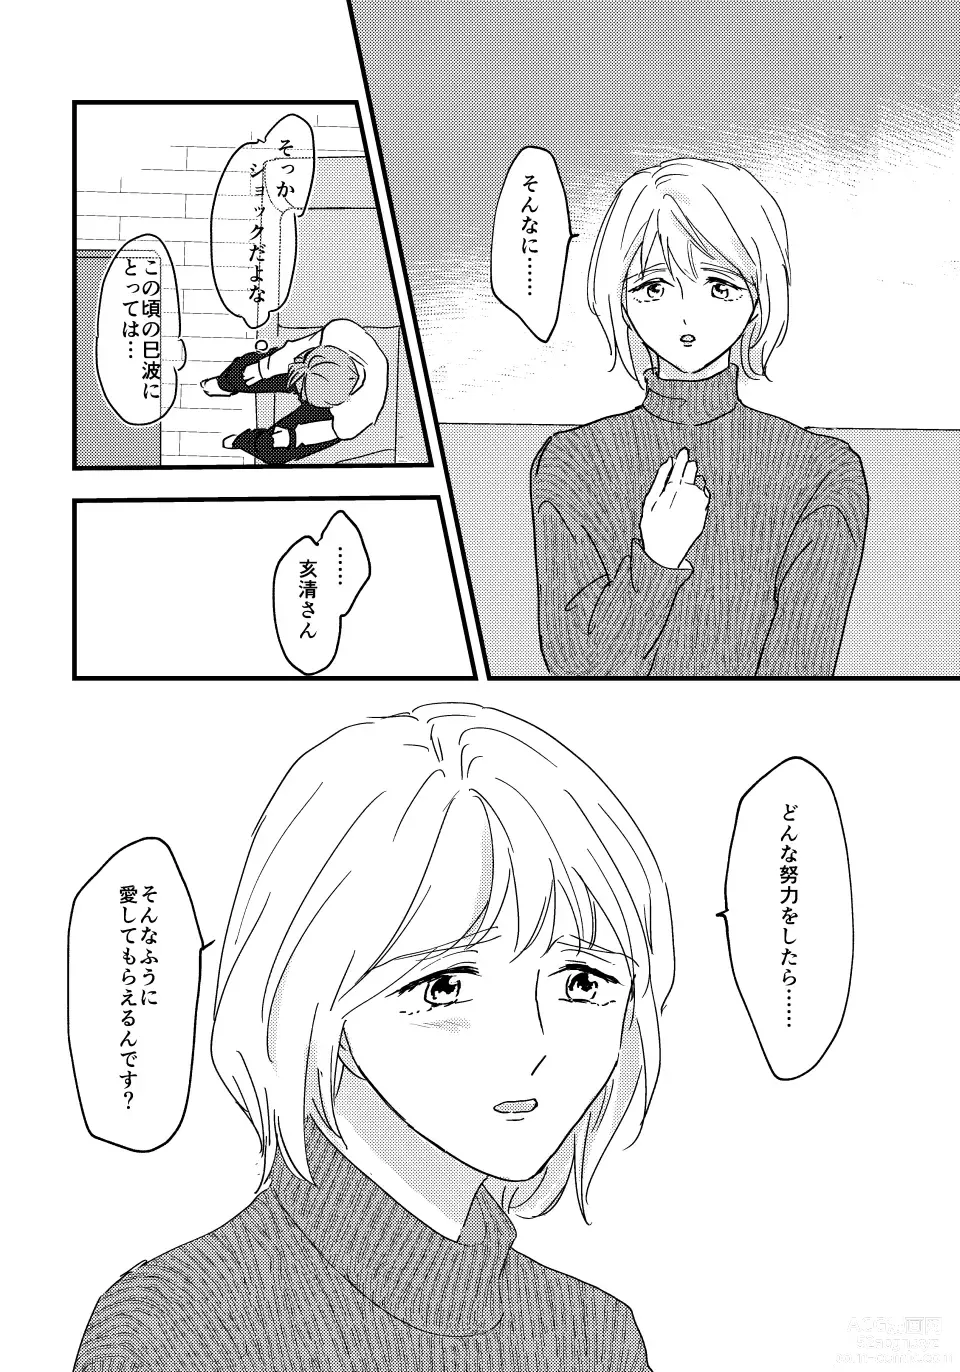 Page 7 of doujinshi Otona ni Nattara